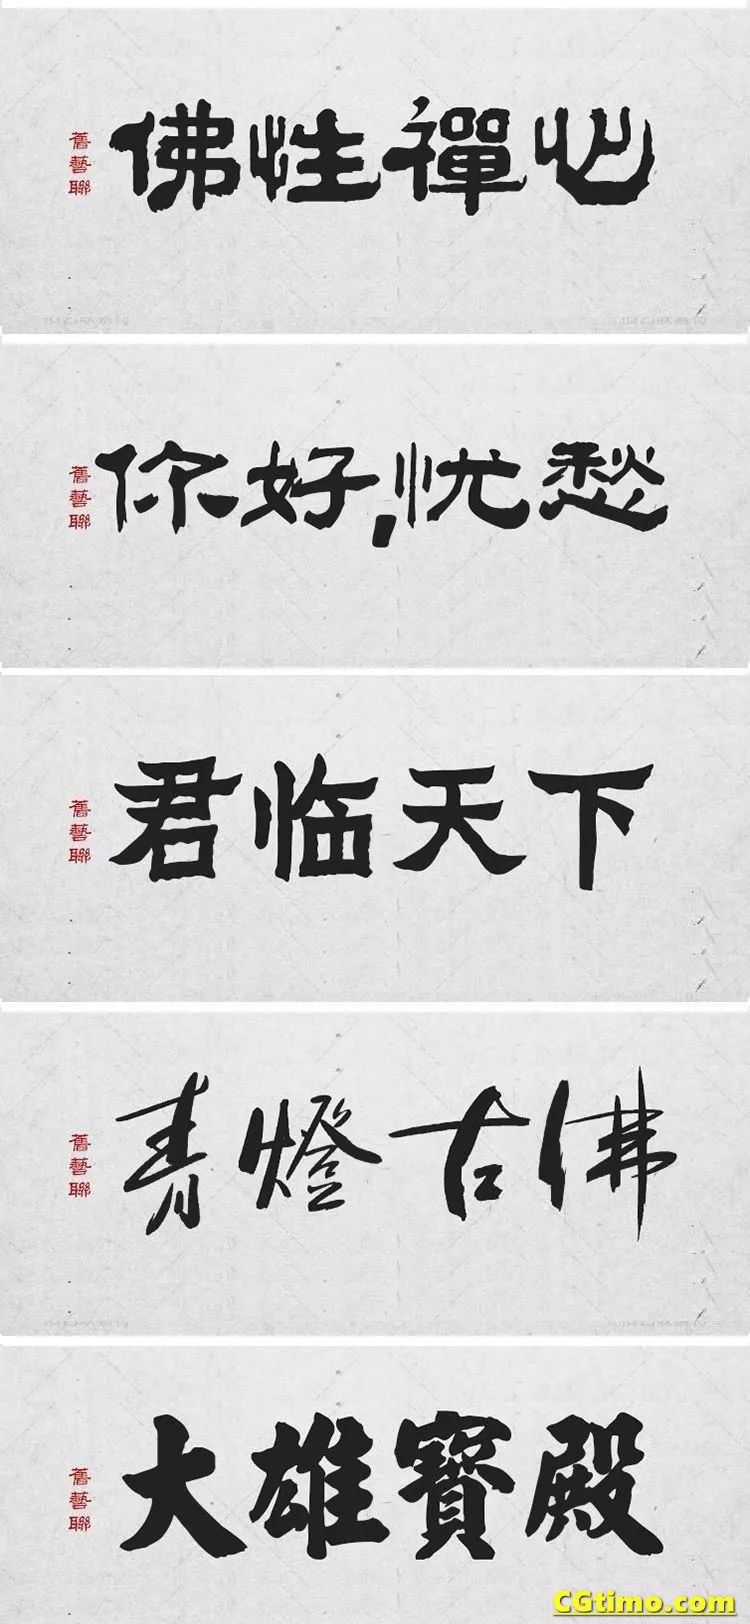 字体-300款中国风高端毛笔字体+笔触合集 字体下载 第17张